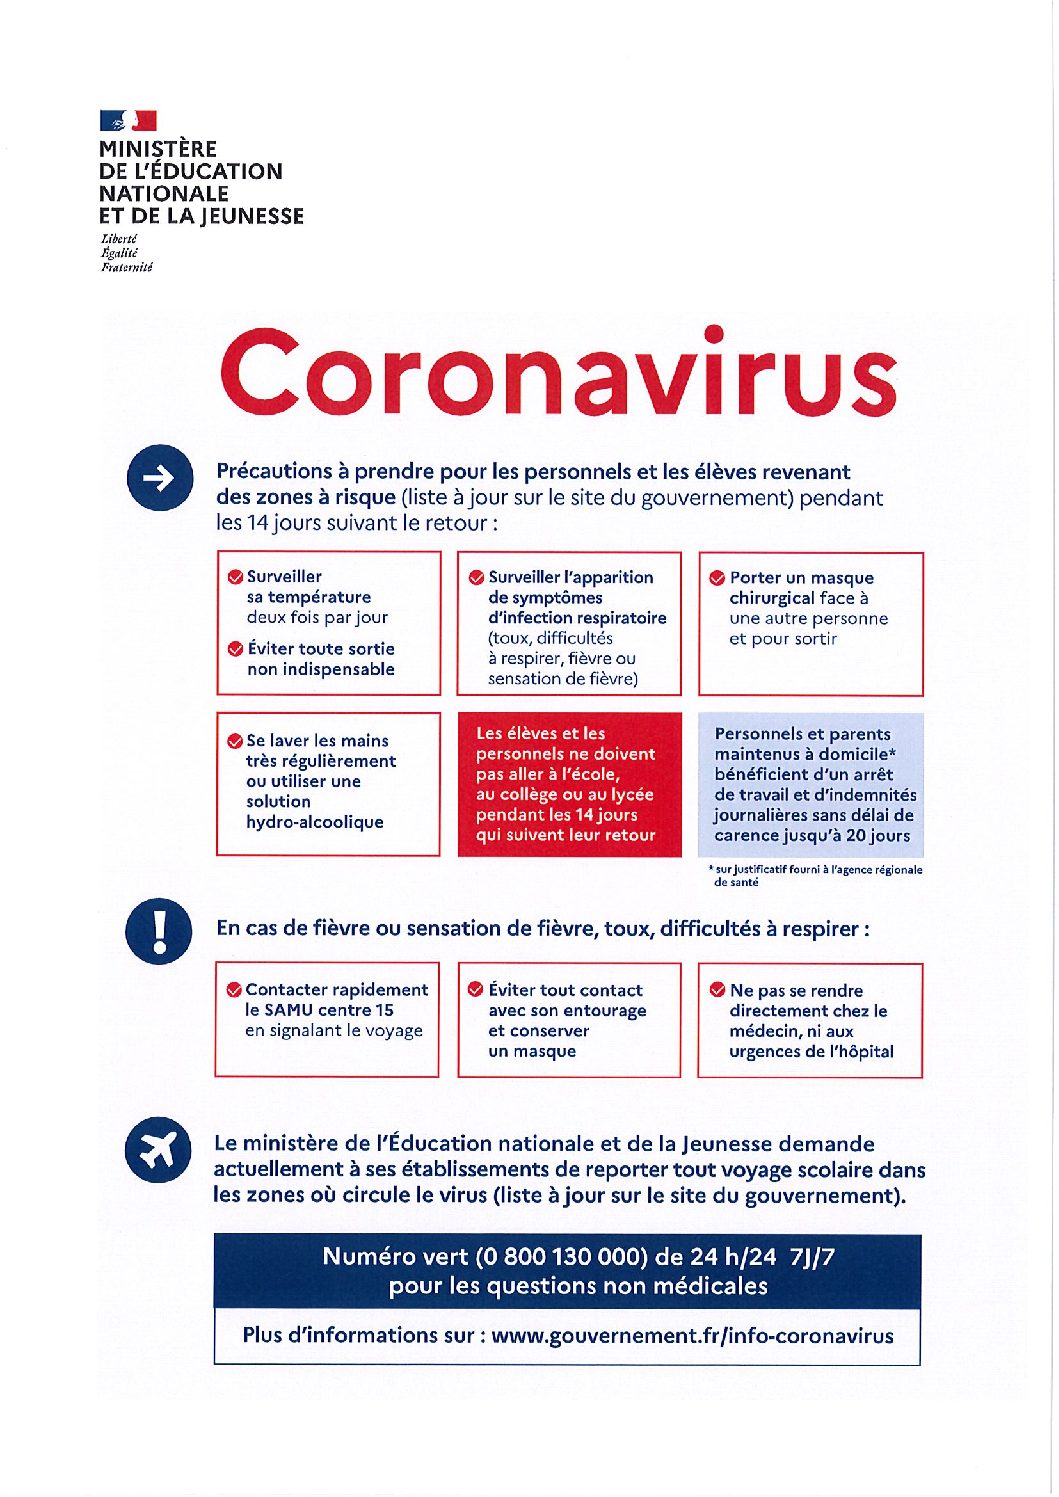 Coronavirus (COVID-19) – Consignes en vue de freiner la propagation en France